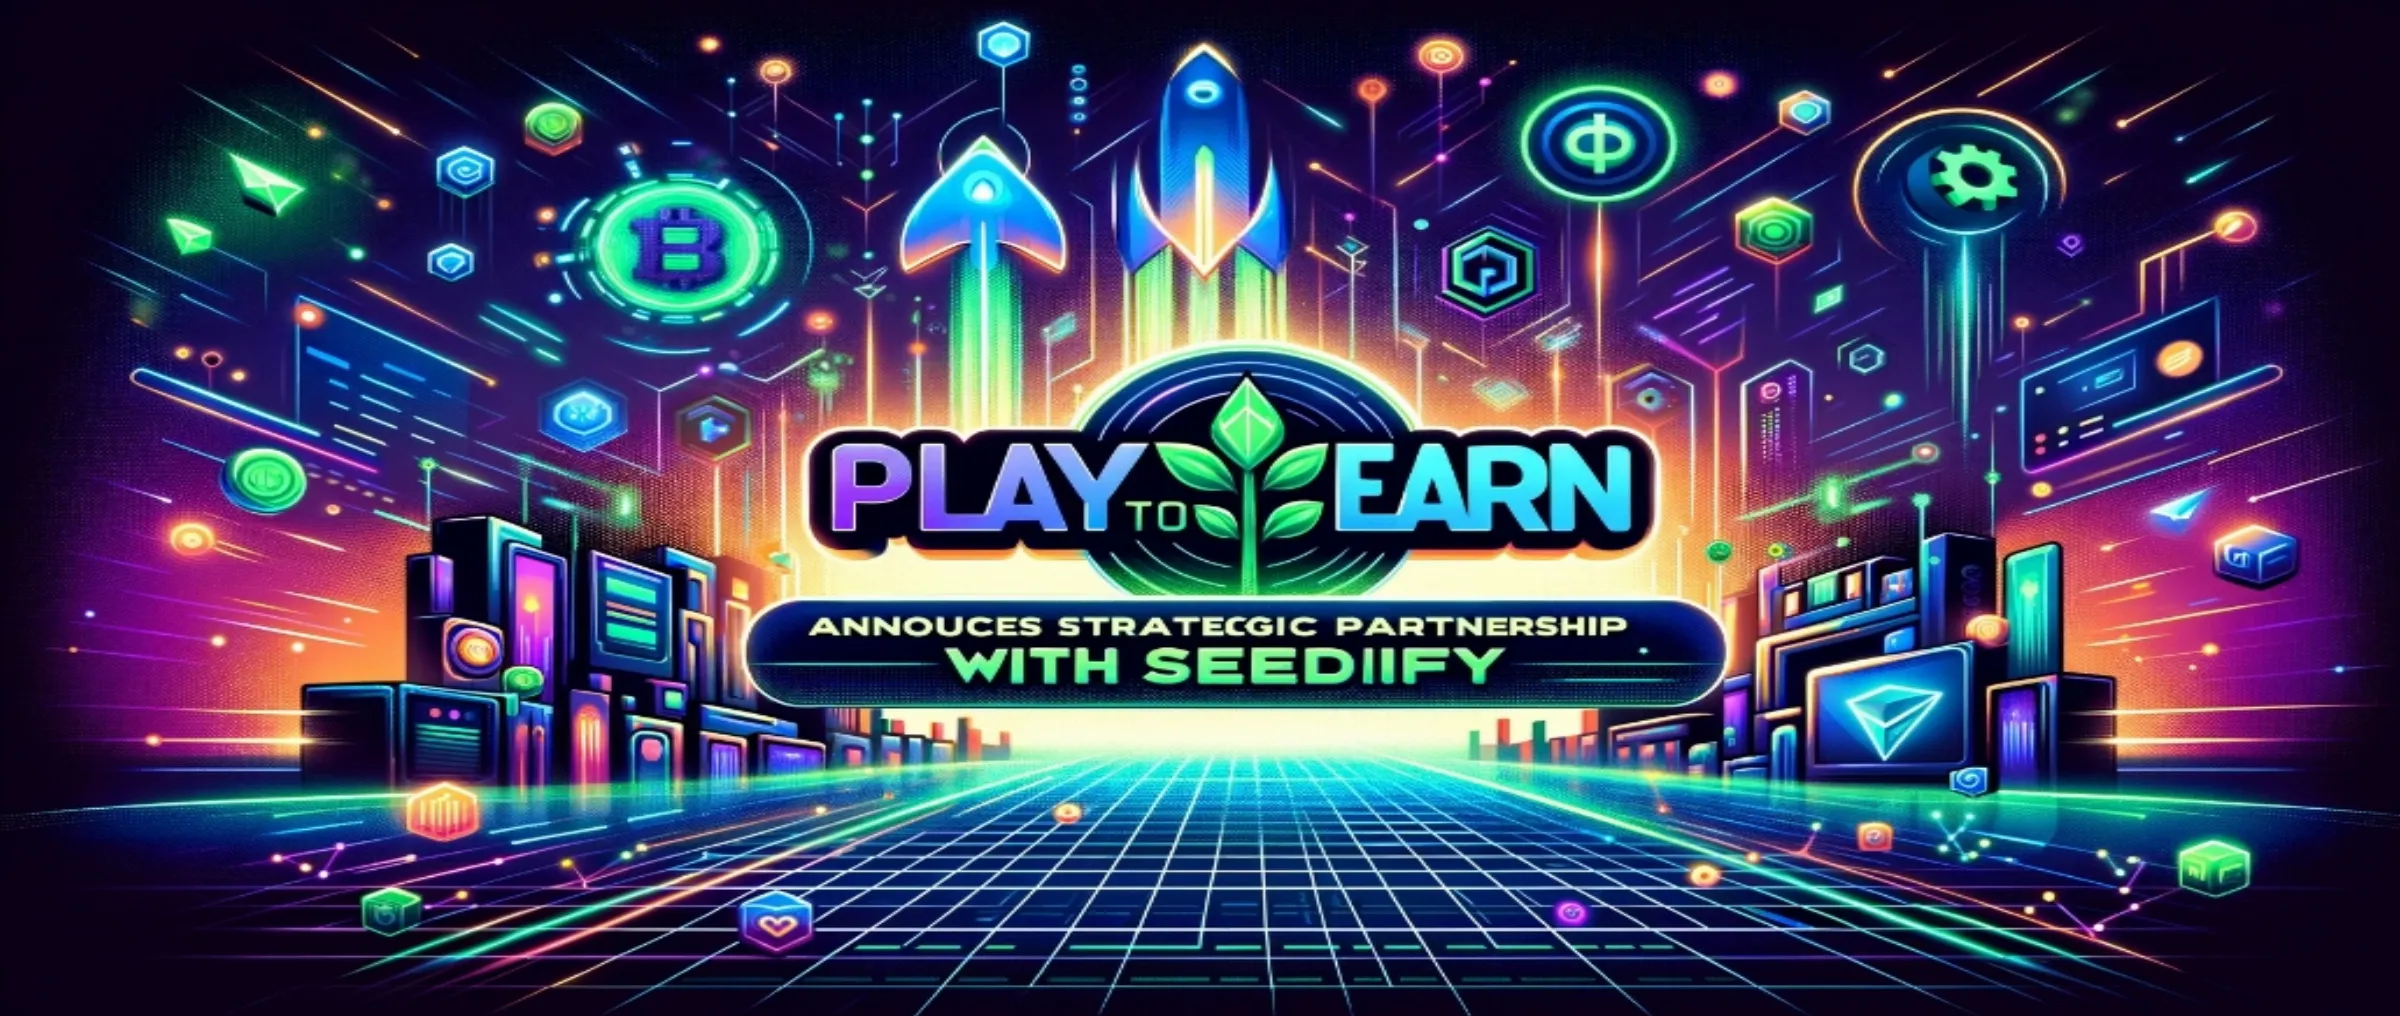 PlaytoEarn.net объявляет о стратегическом сотрудничестве с Seedify